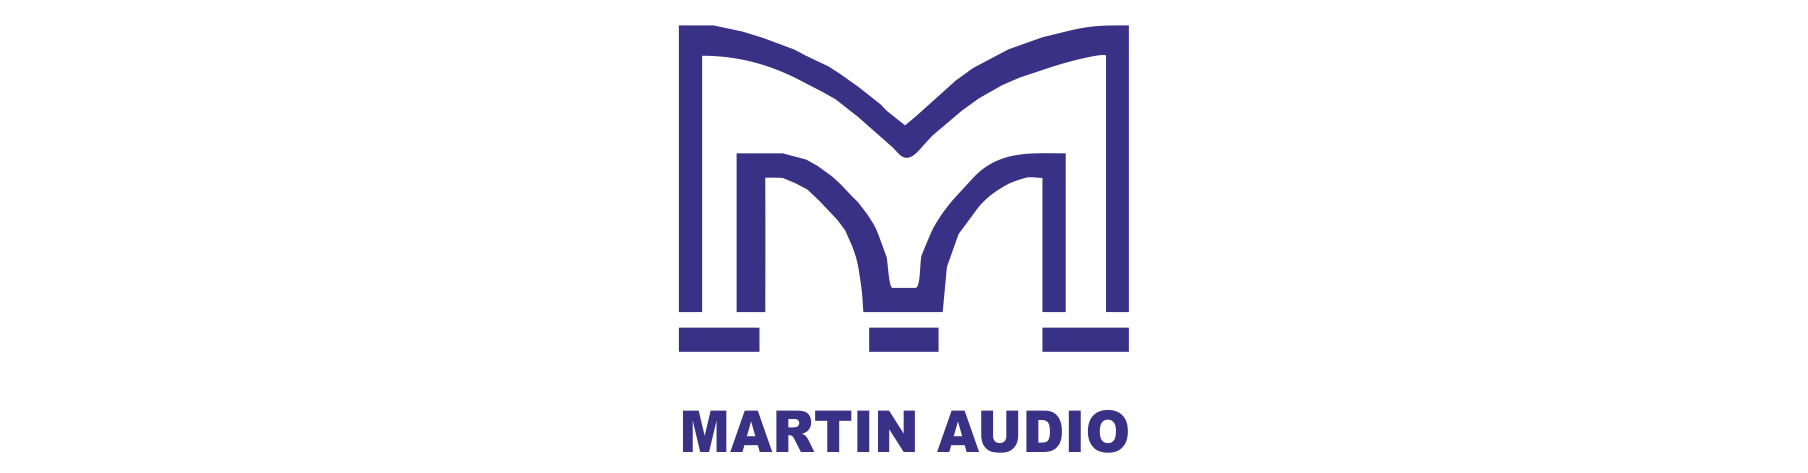 martin speaker brand logos traced